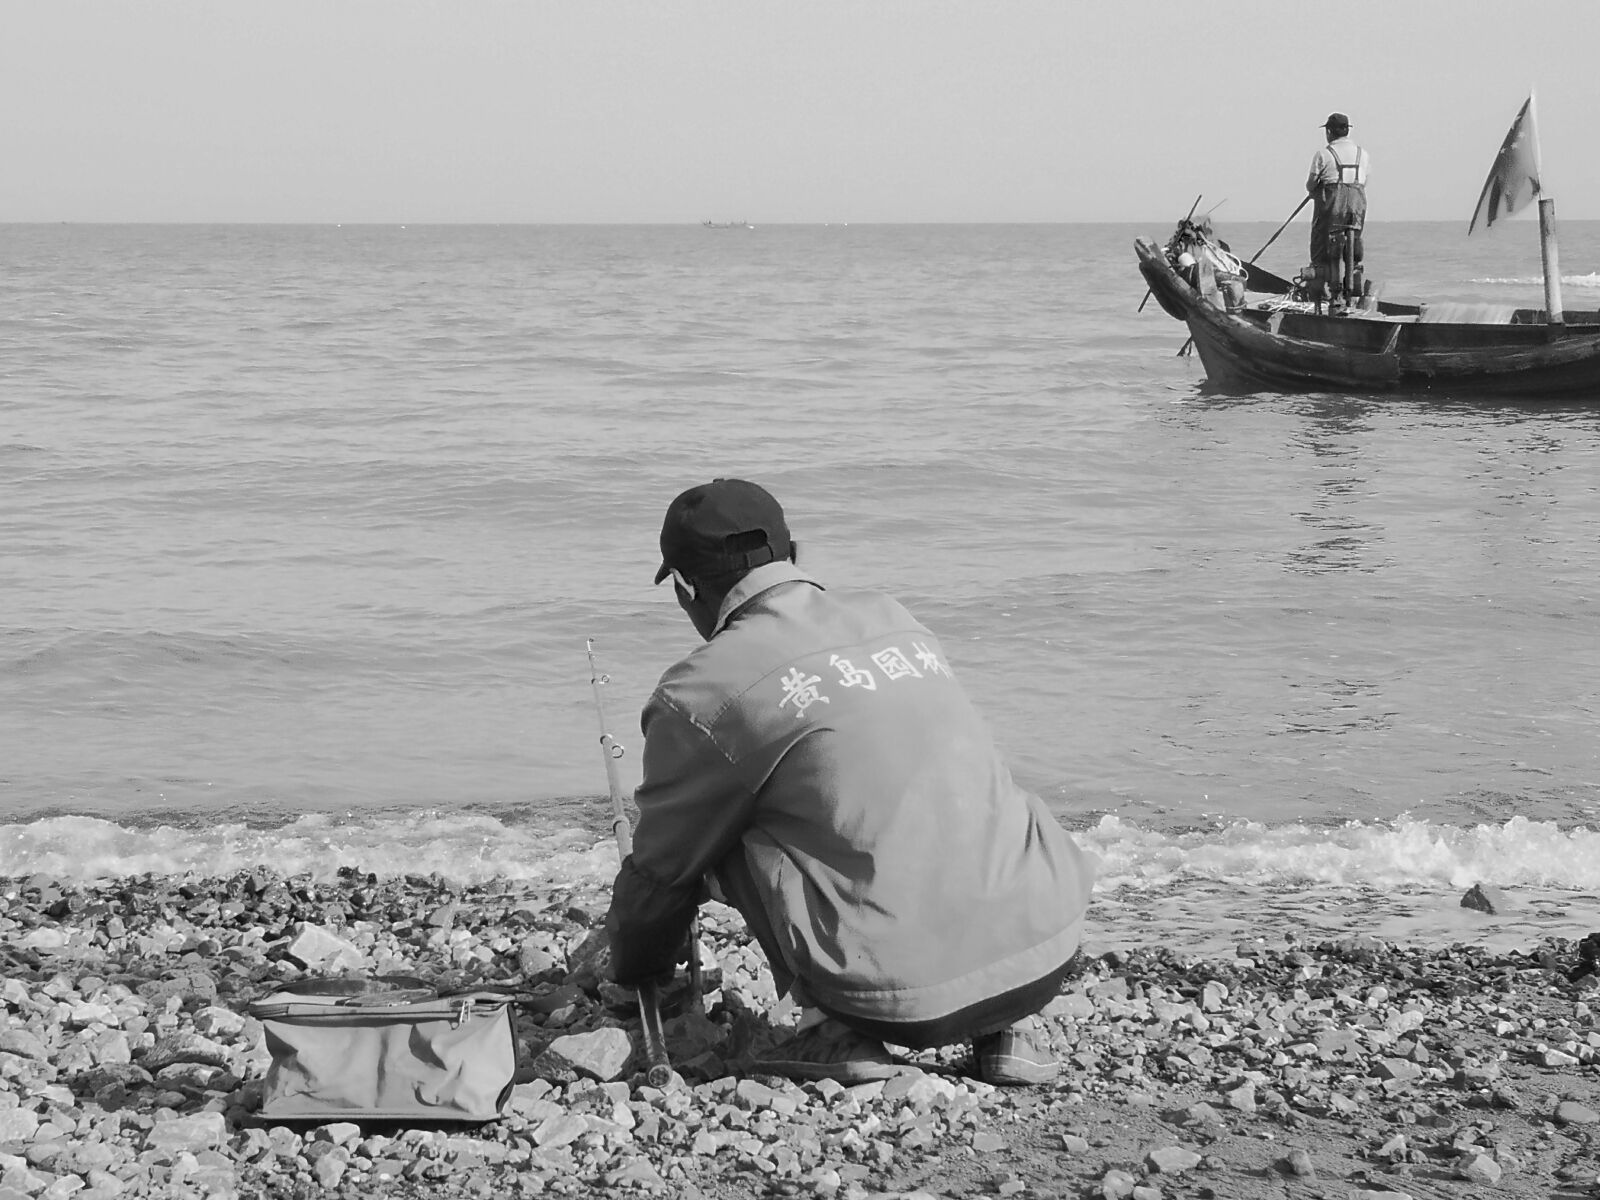 HUAWEI P20 Pro sample photo. Fishermen, qingdao, beach photography